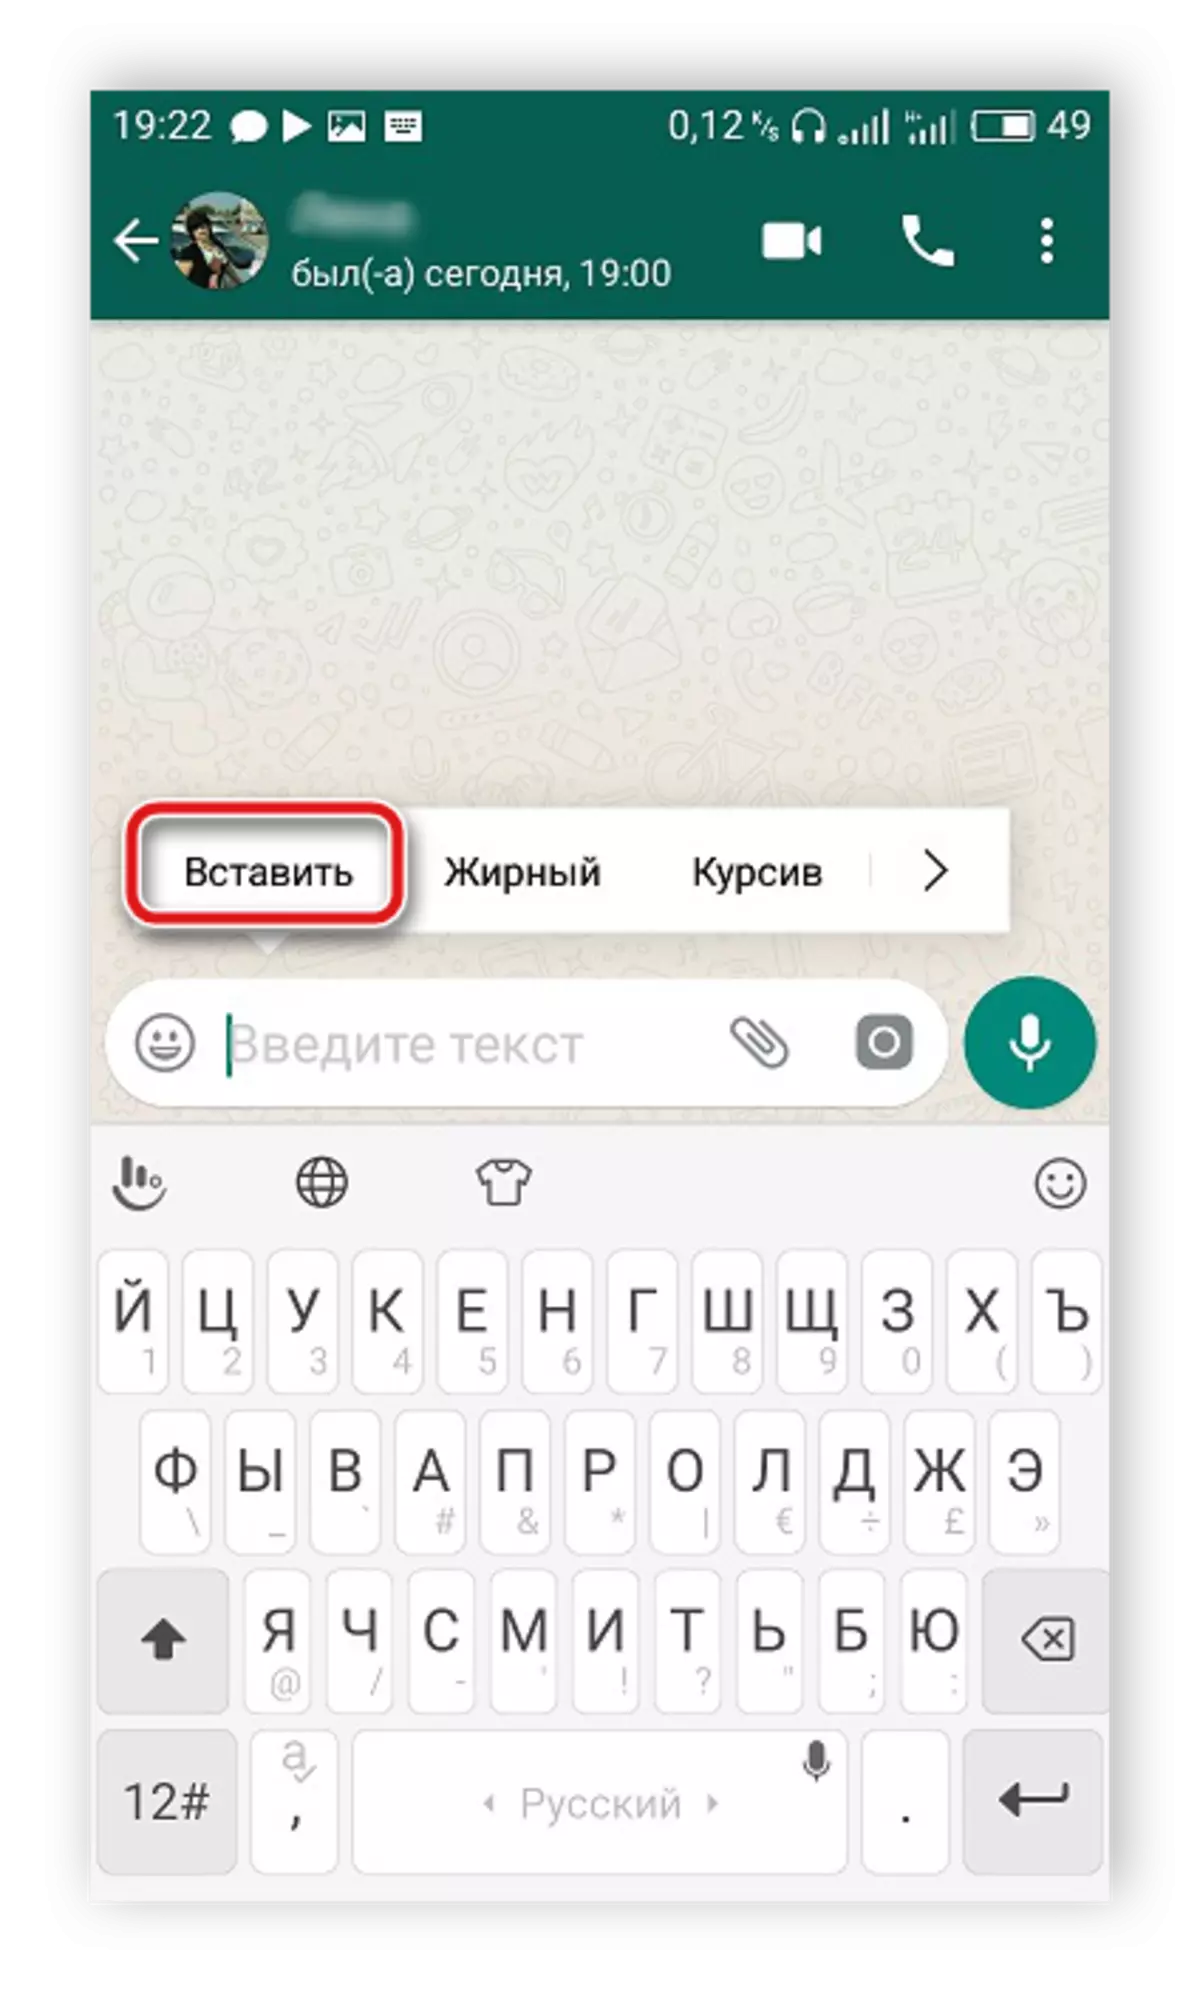 Ievietojiet saiti uz video mobilajā lietojumprogrammā WhatsApp